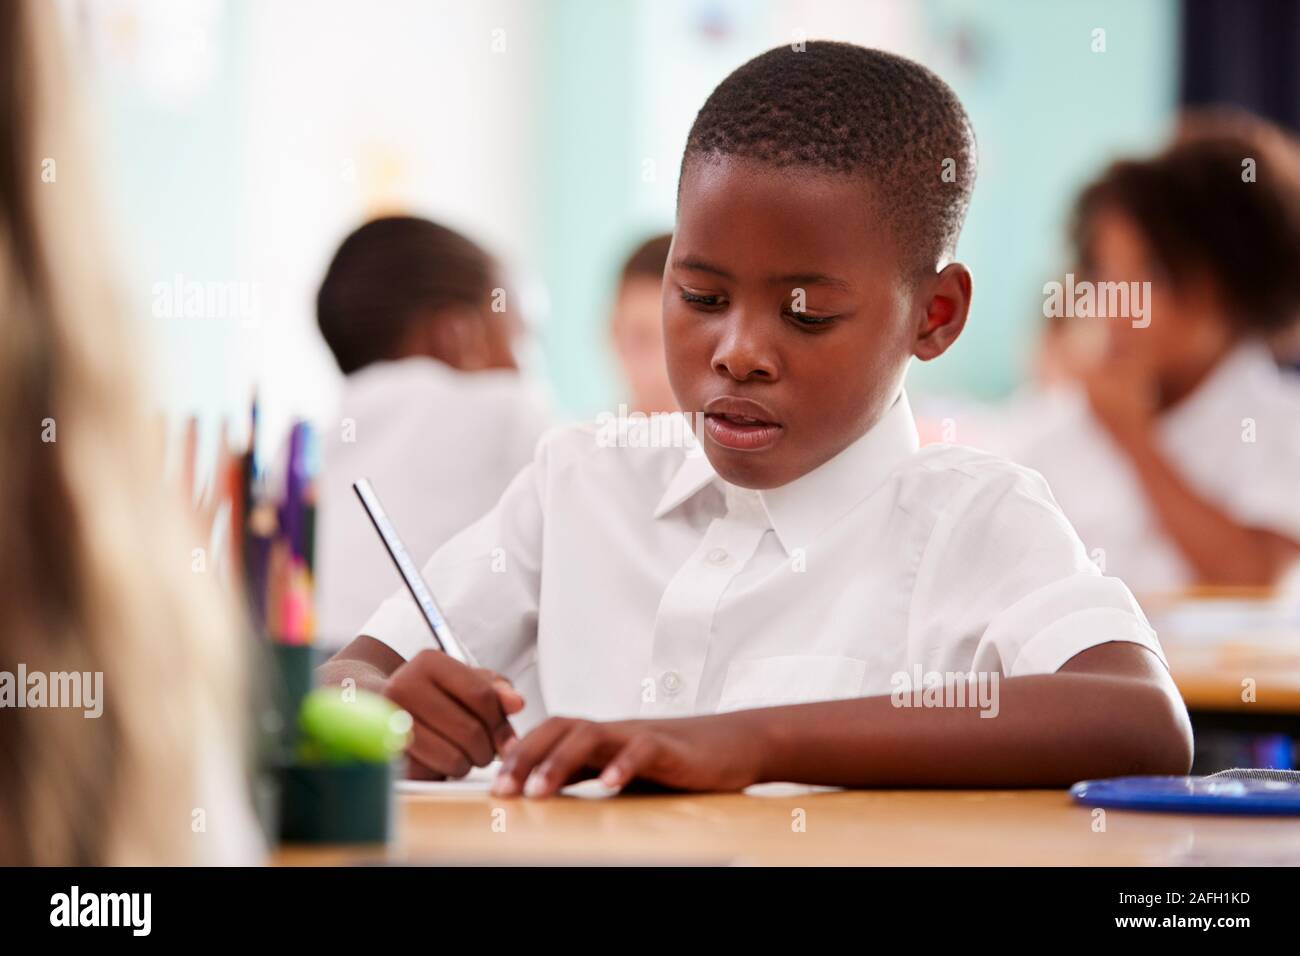 Maschio di scuola elementare allievo indossano uniformi di lavorare alla scrivania Foto Stock